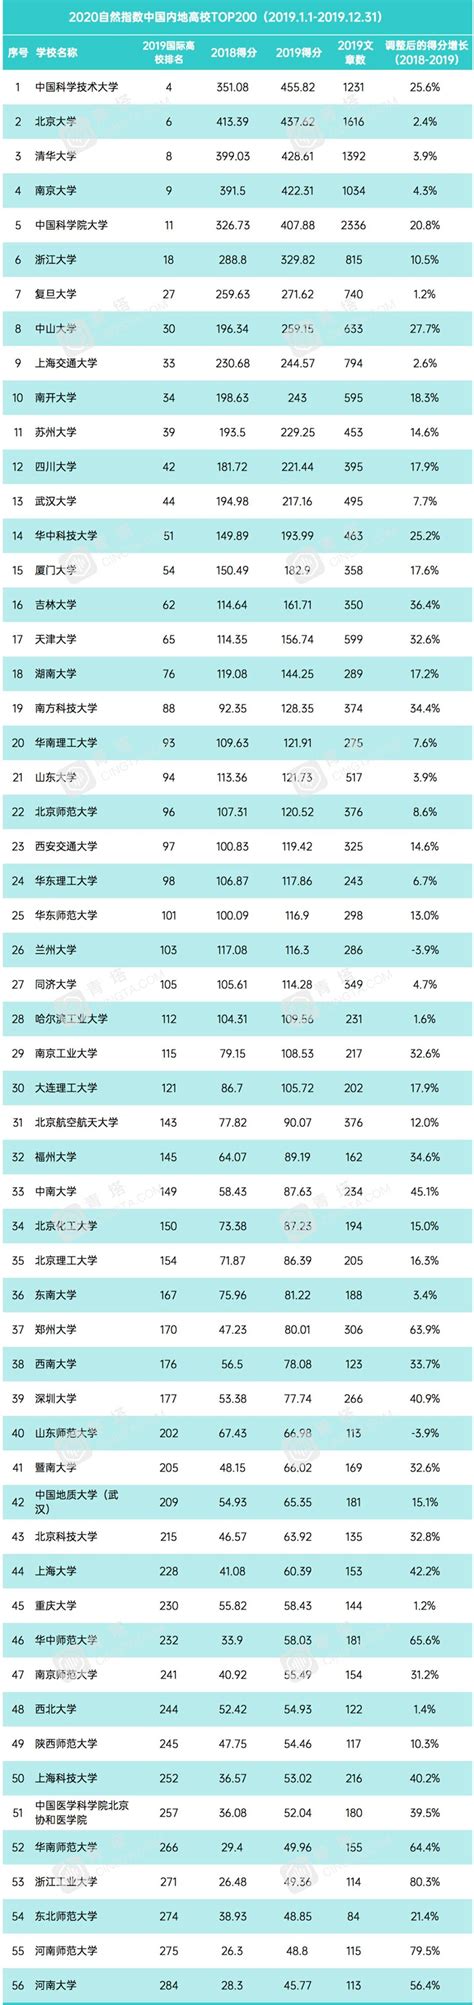 2020自然指数正式公布，国内高校排名进步明显_考研网-北京新东方学校